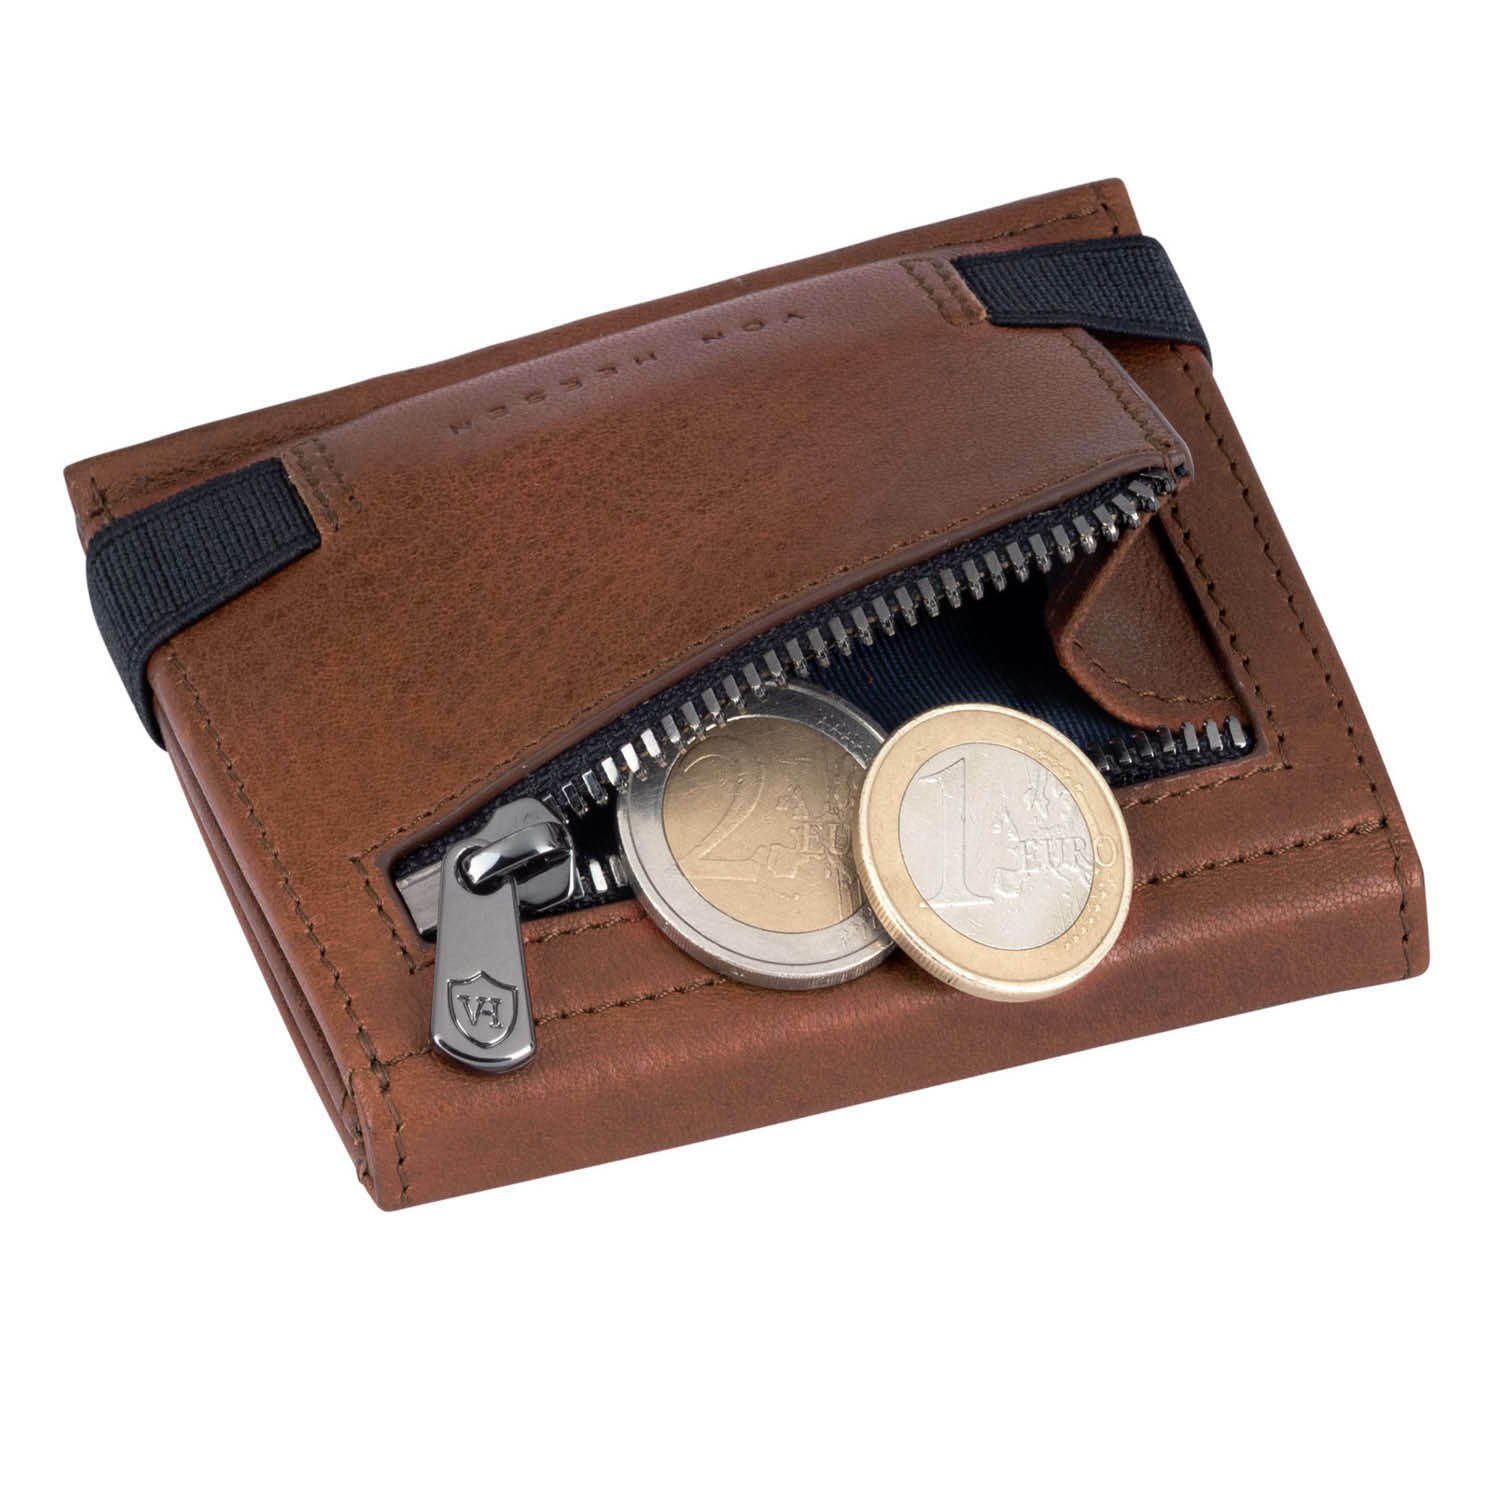 VON HEESEN & RFID-Schutz mit Geldbeutel Slim & inkl. Cognac-Braun Wallet Geldbörse 5 Geschenkbox Mini-Münzfach, Kartenfächer Portemonnaie Whizz Wallet